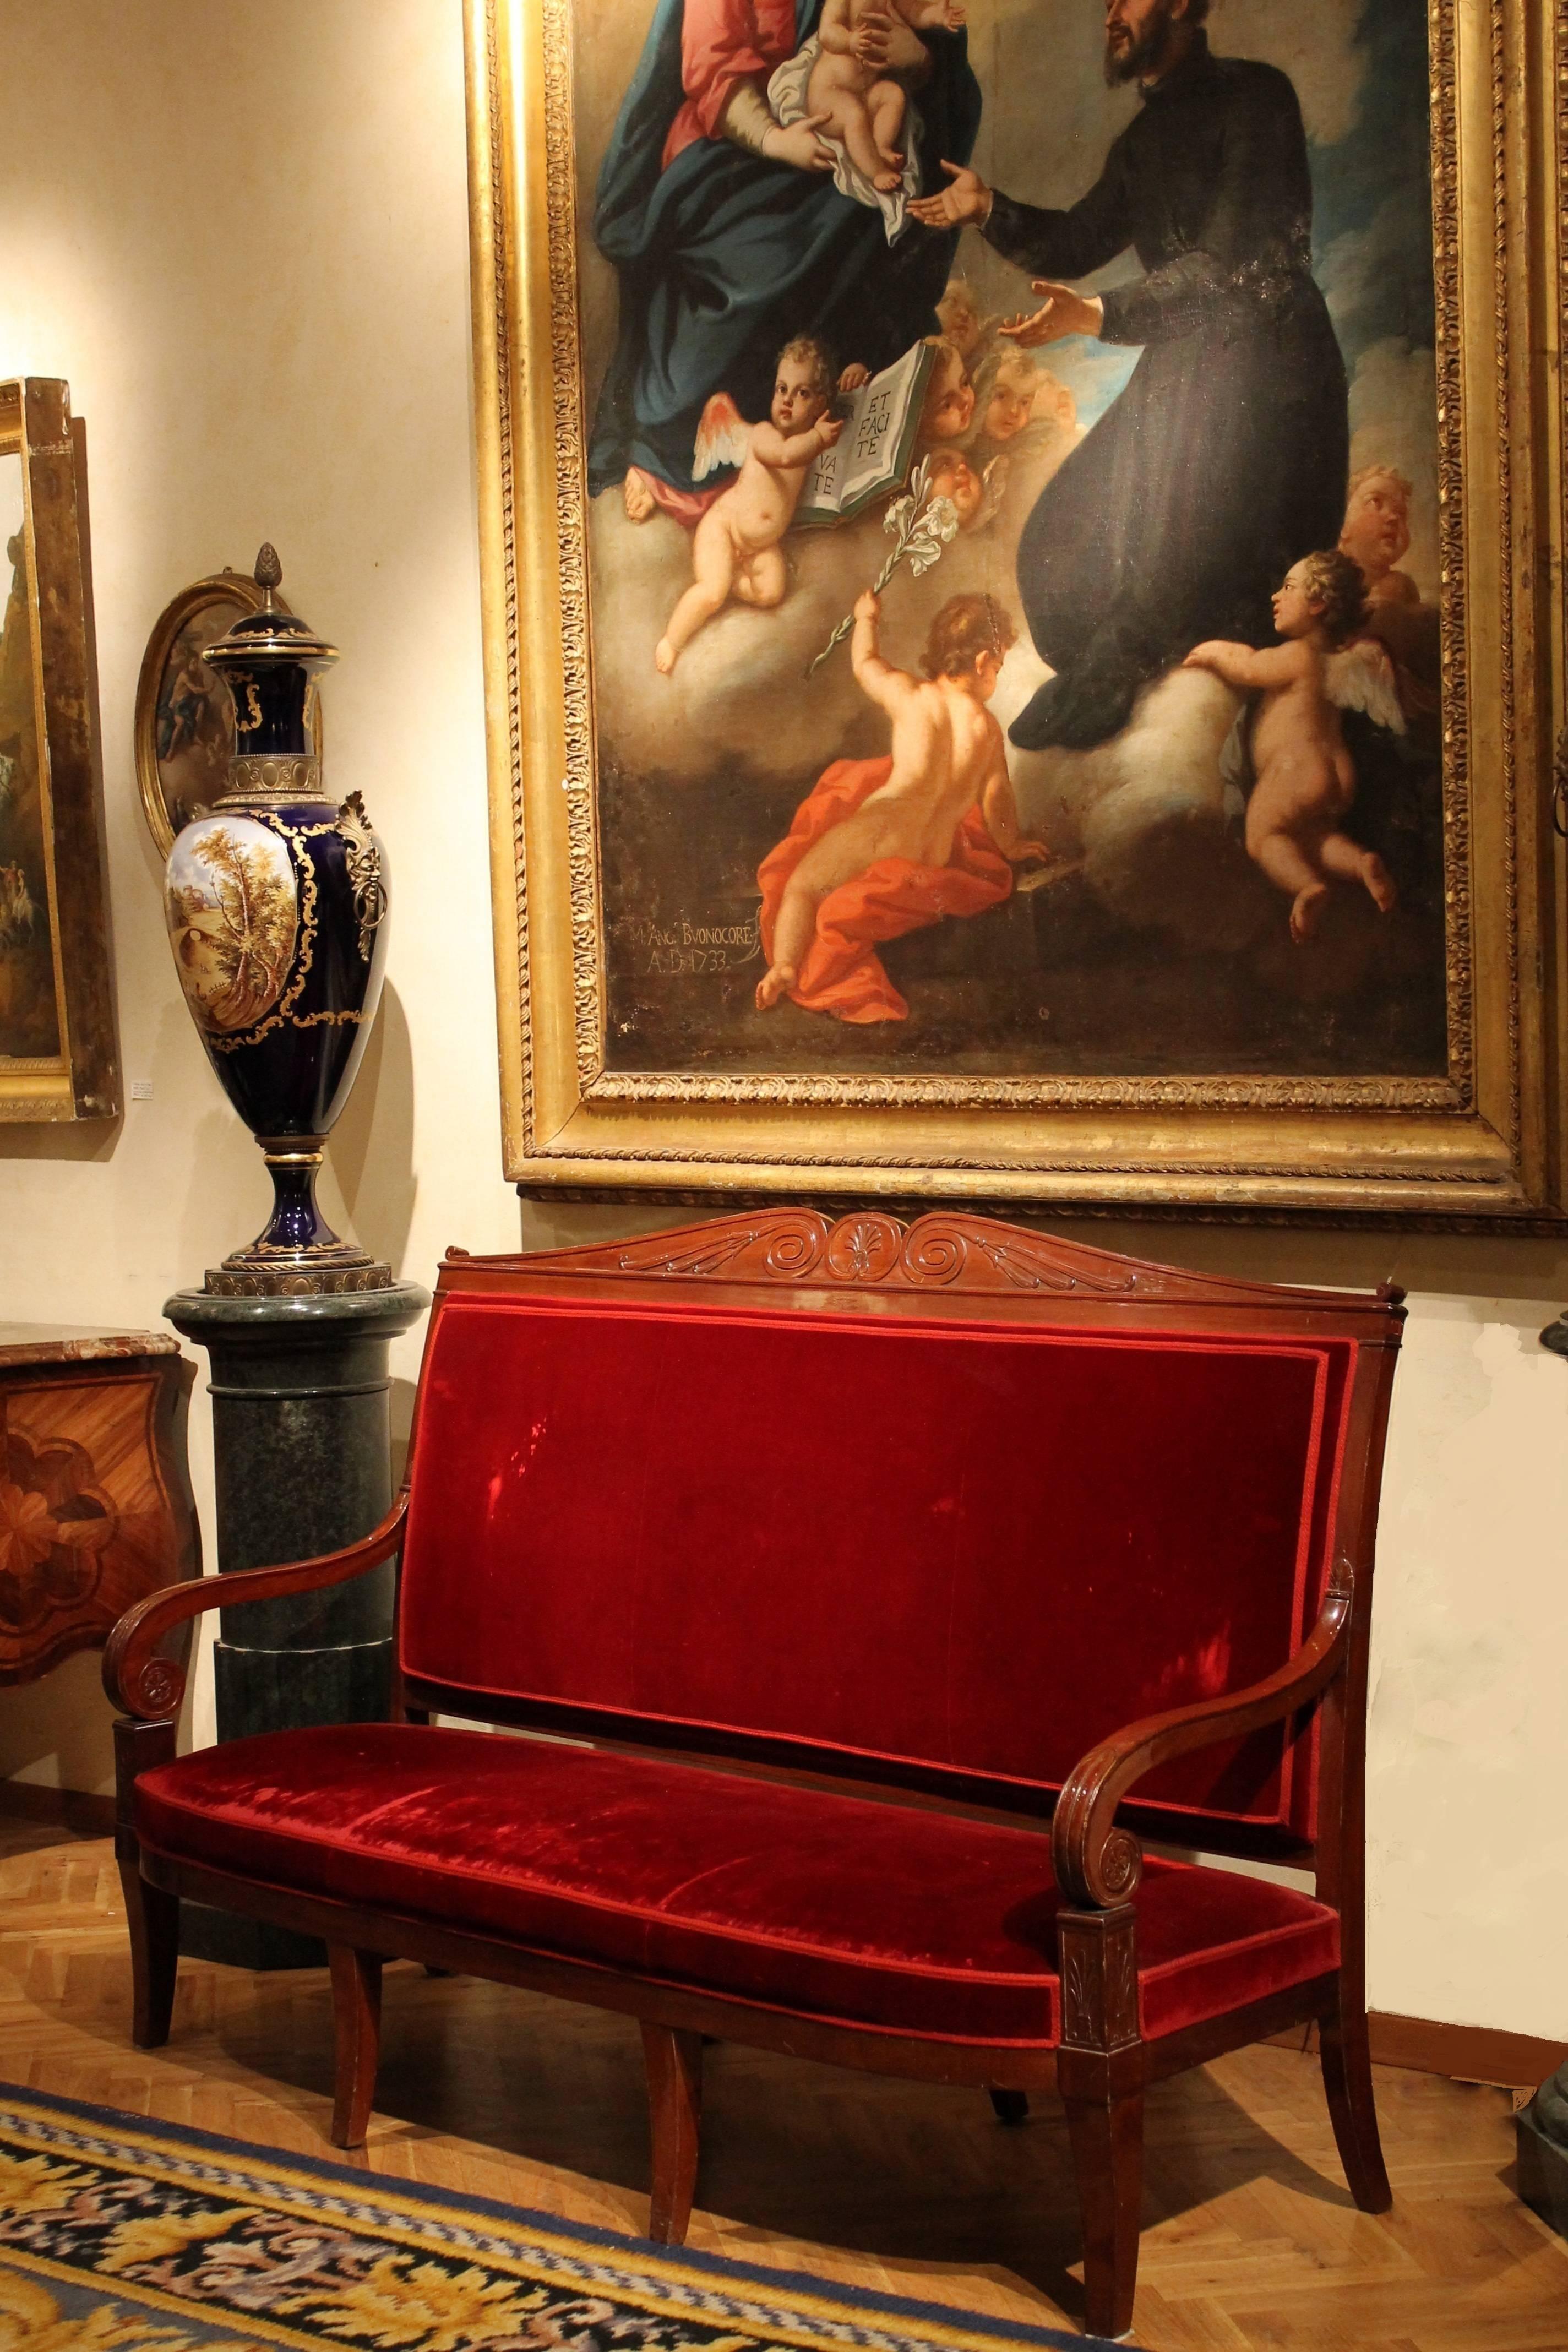 Dieses prächtige französische Sofa aus dem späten 18. bis frühen 19. Jahrhundert (1796 - 1825), handgeschnitzt in der Art von Jacob-Desmalter - einem einflussreichen Stuhlmacher und Kunsttischler, der für König Ludwig XVI. von Frankreich arbeitete